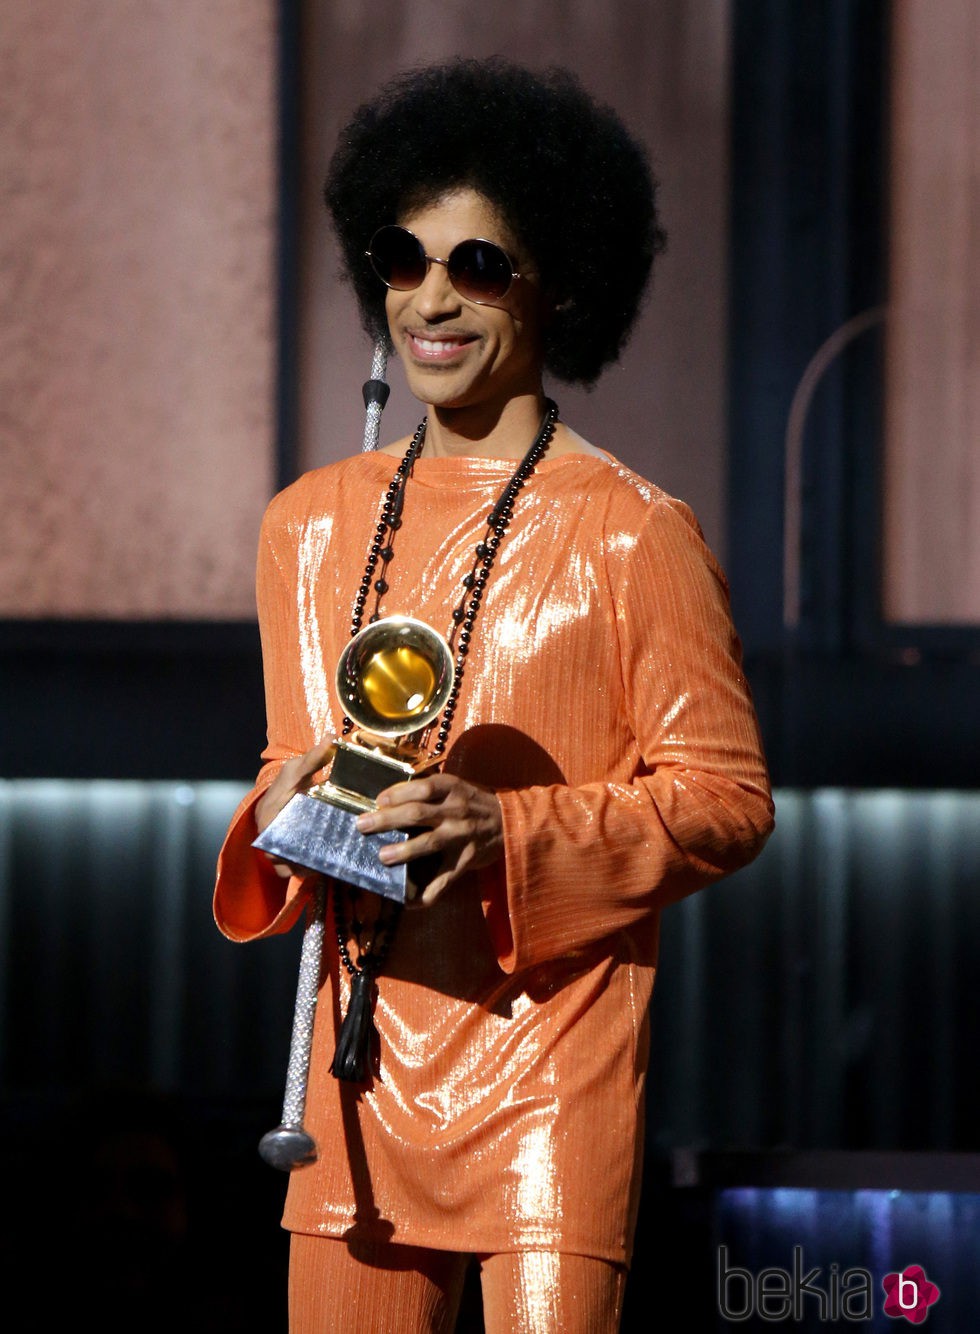 Prince en el escenario de los premios Grammy 2015